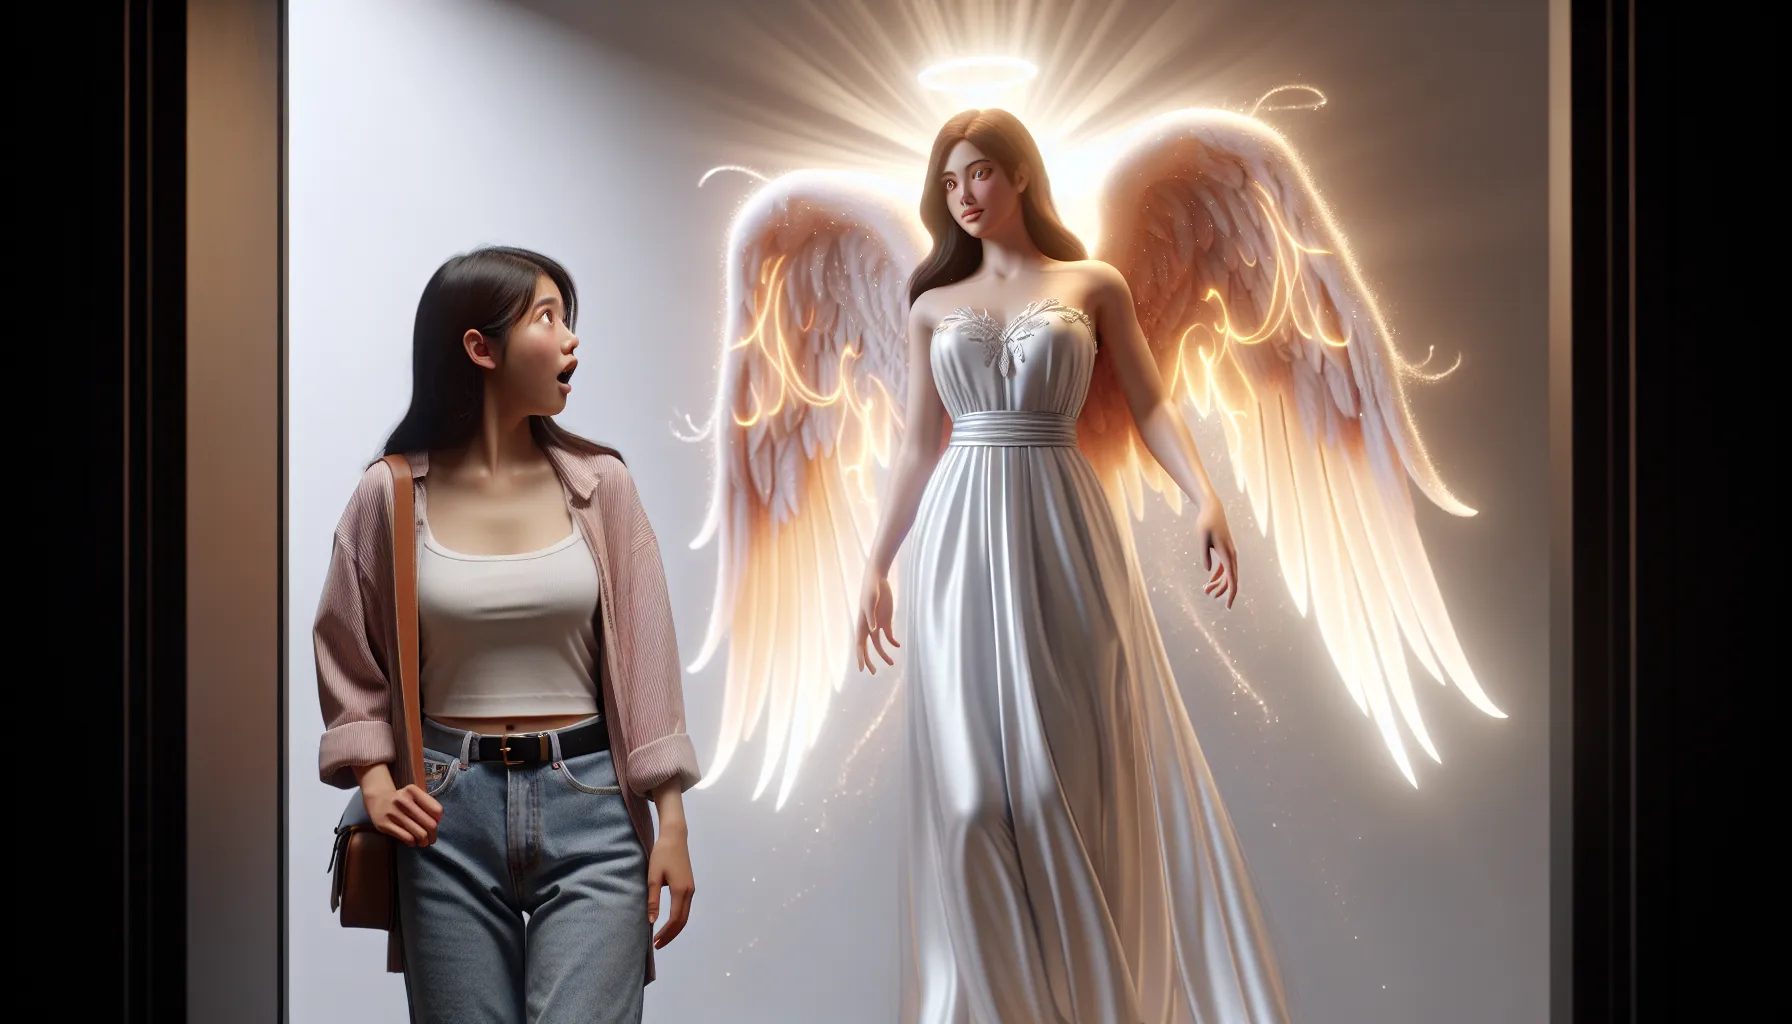 Imagen de un ángel con una apariencia moderna apareciendo frente a una persona sorprendida.